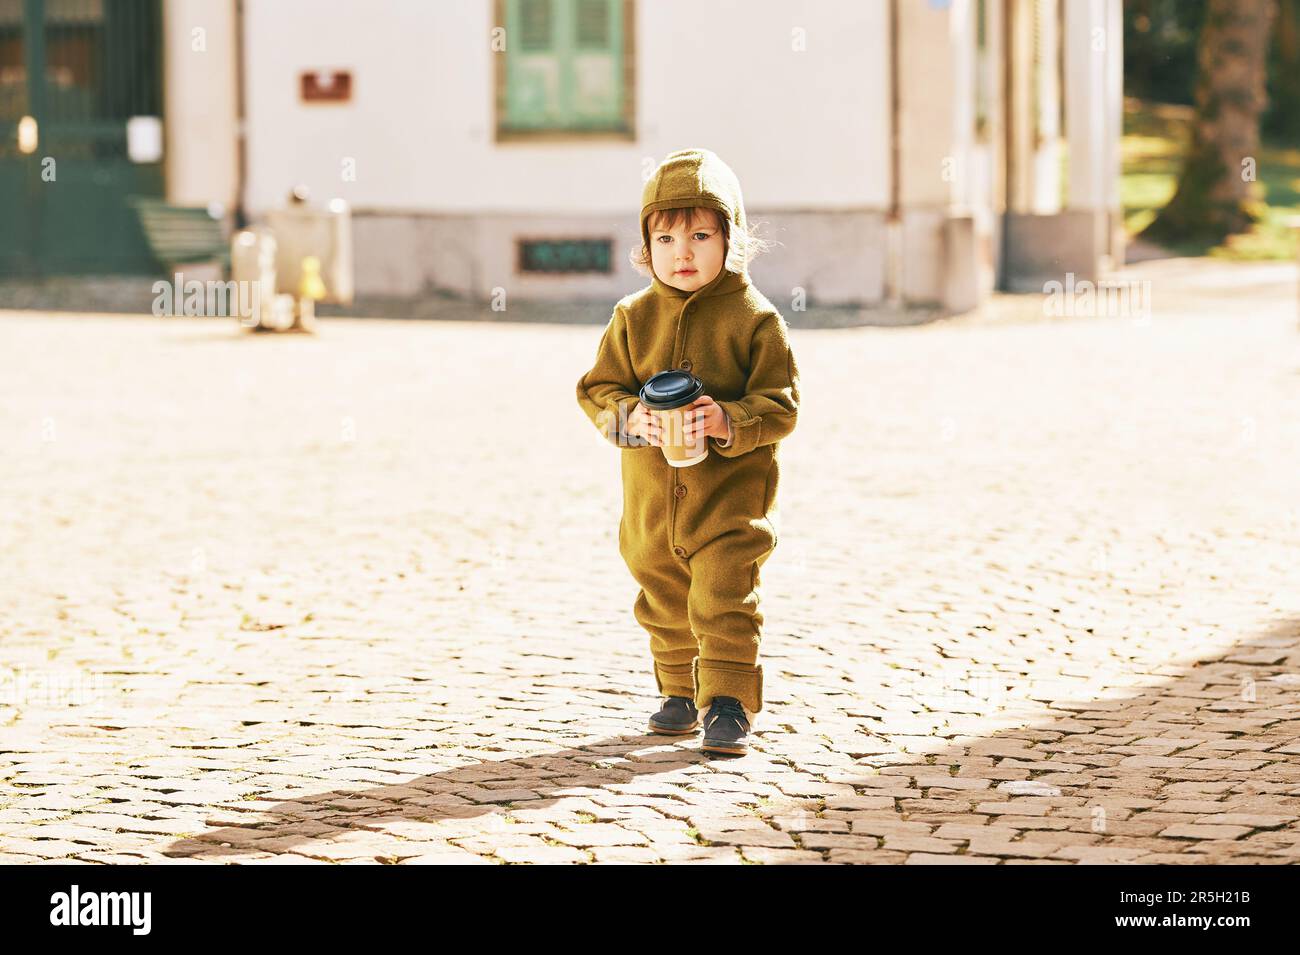 Außenporträt eines niedlichen Kleinkindes, das die Straße entlang läuft, einen olivfarbenen, warmen Overall trägt und eine Tasse Kaffee zum Mitnehmen hält Stockfoto